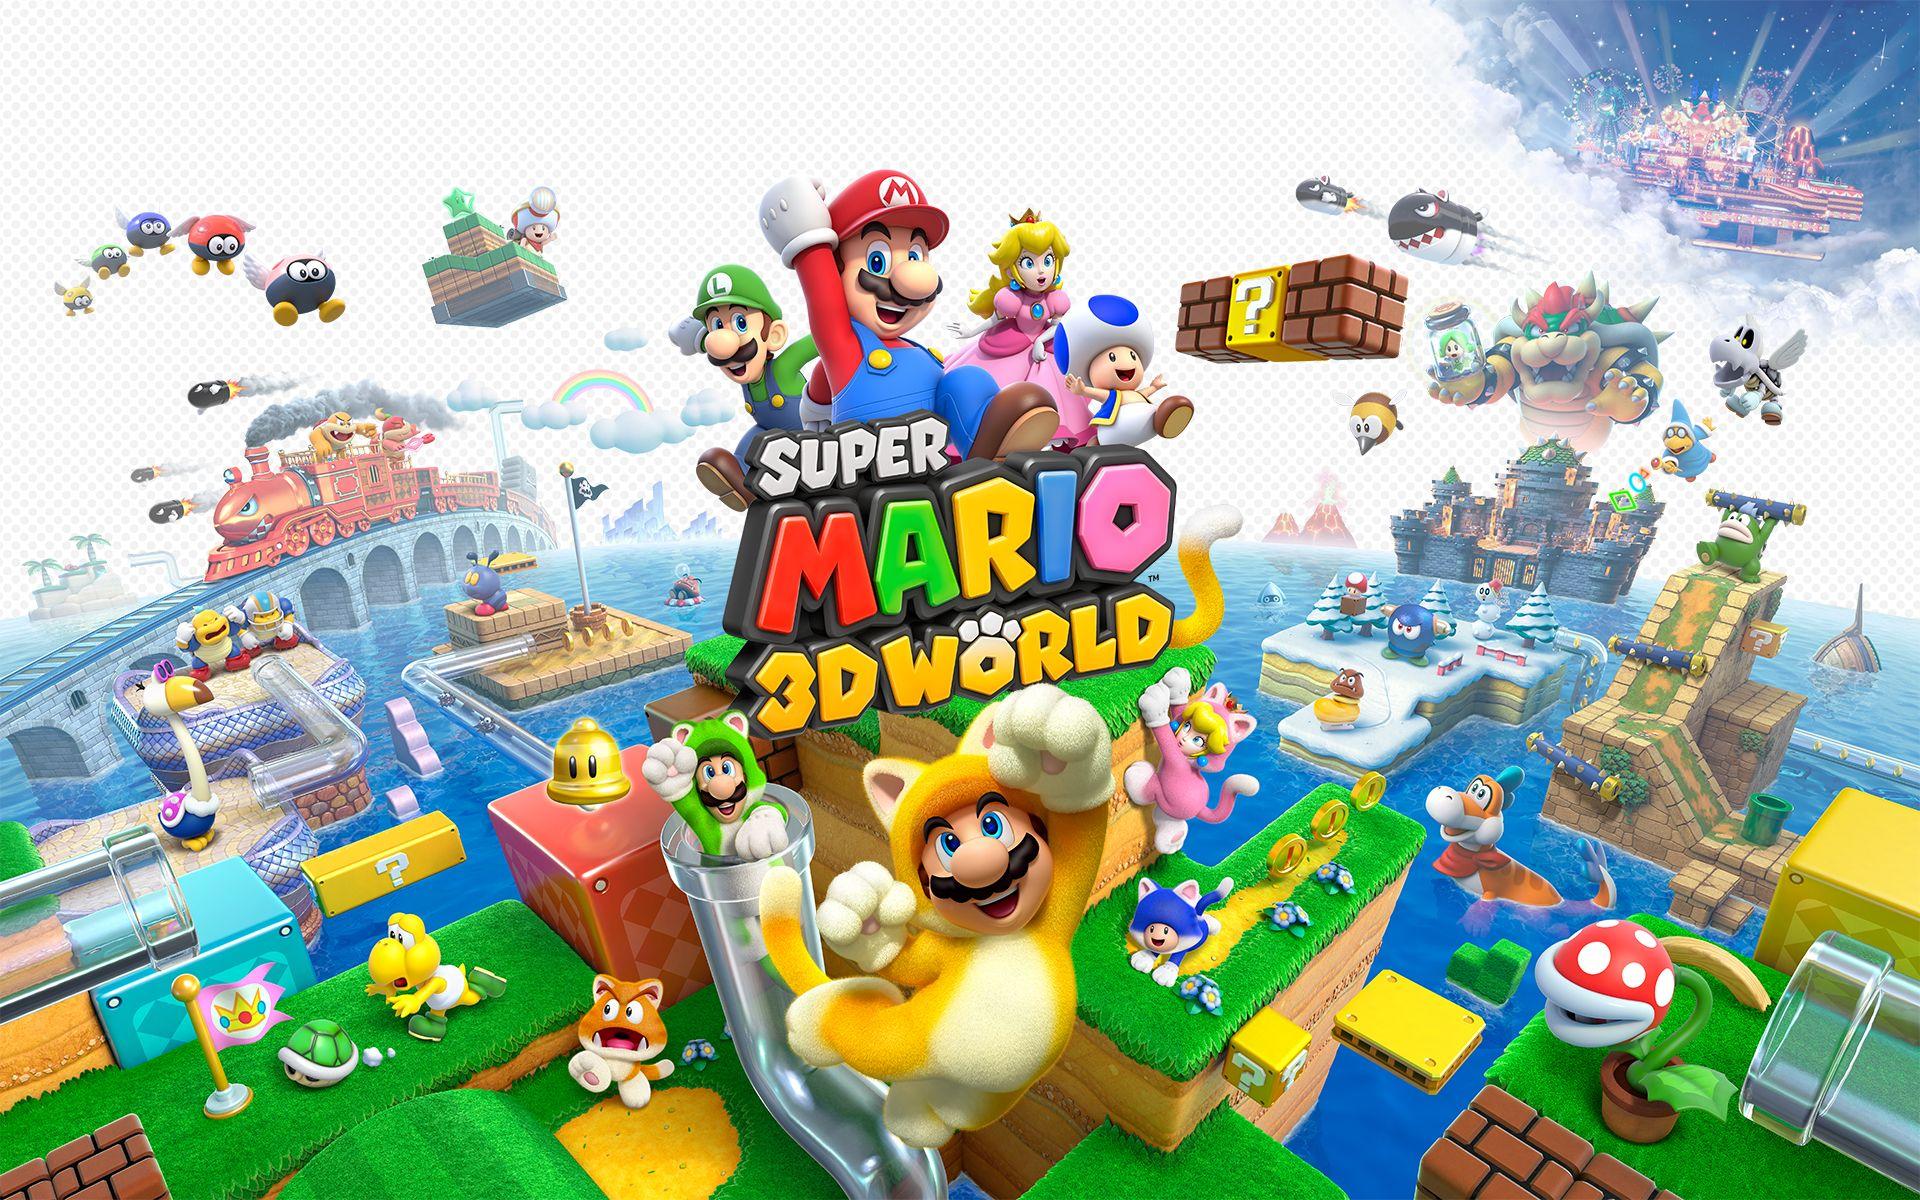 Best Super Mario 3D World Wallpaper. Nintendo News Fix